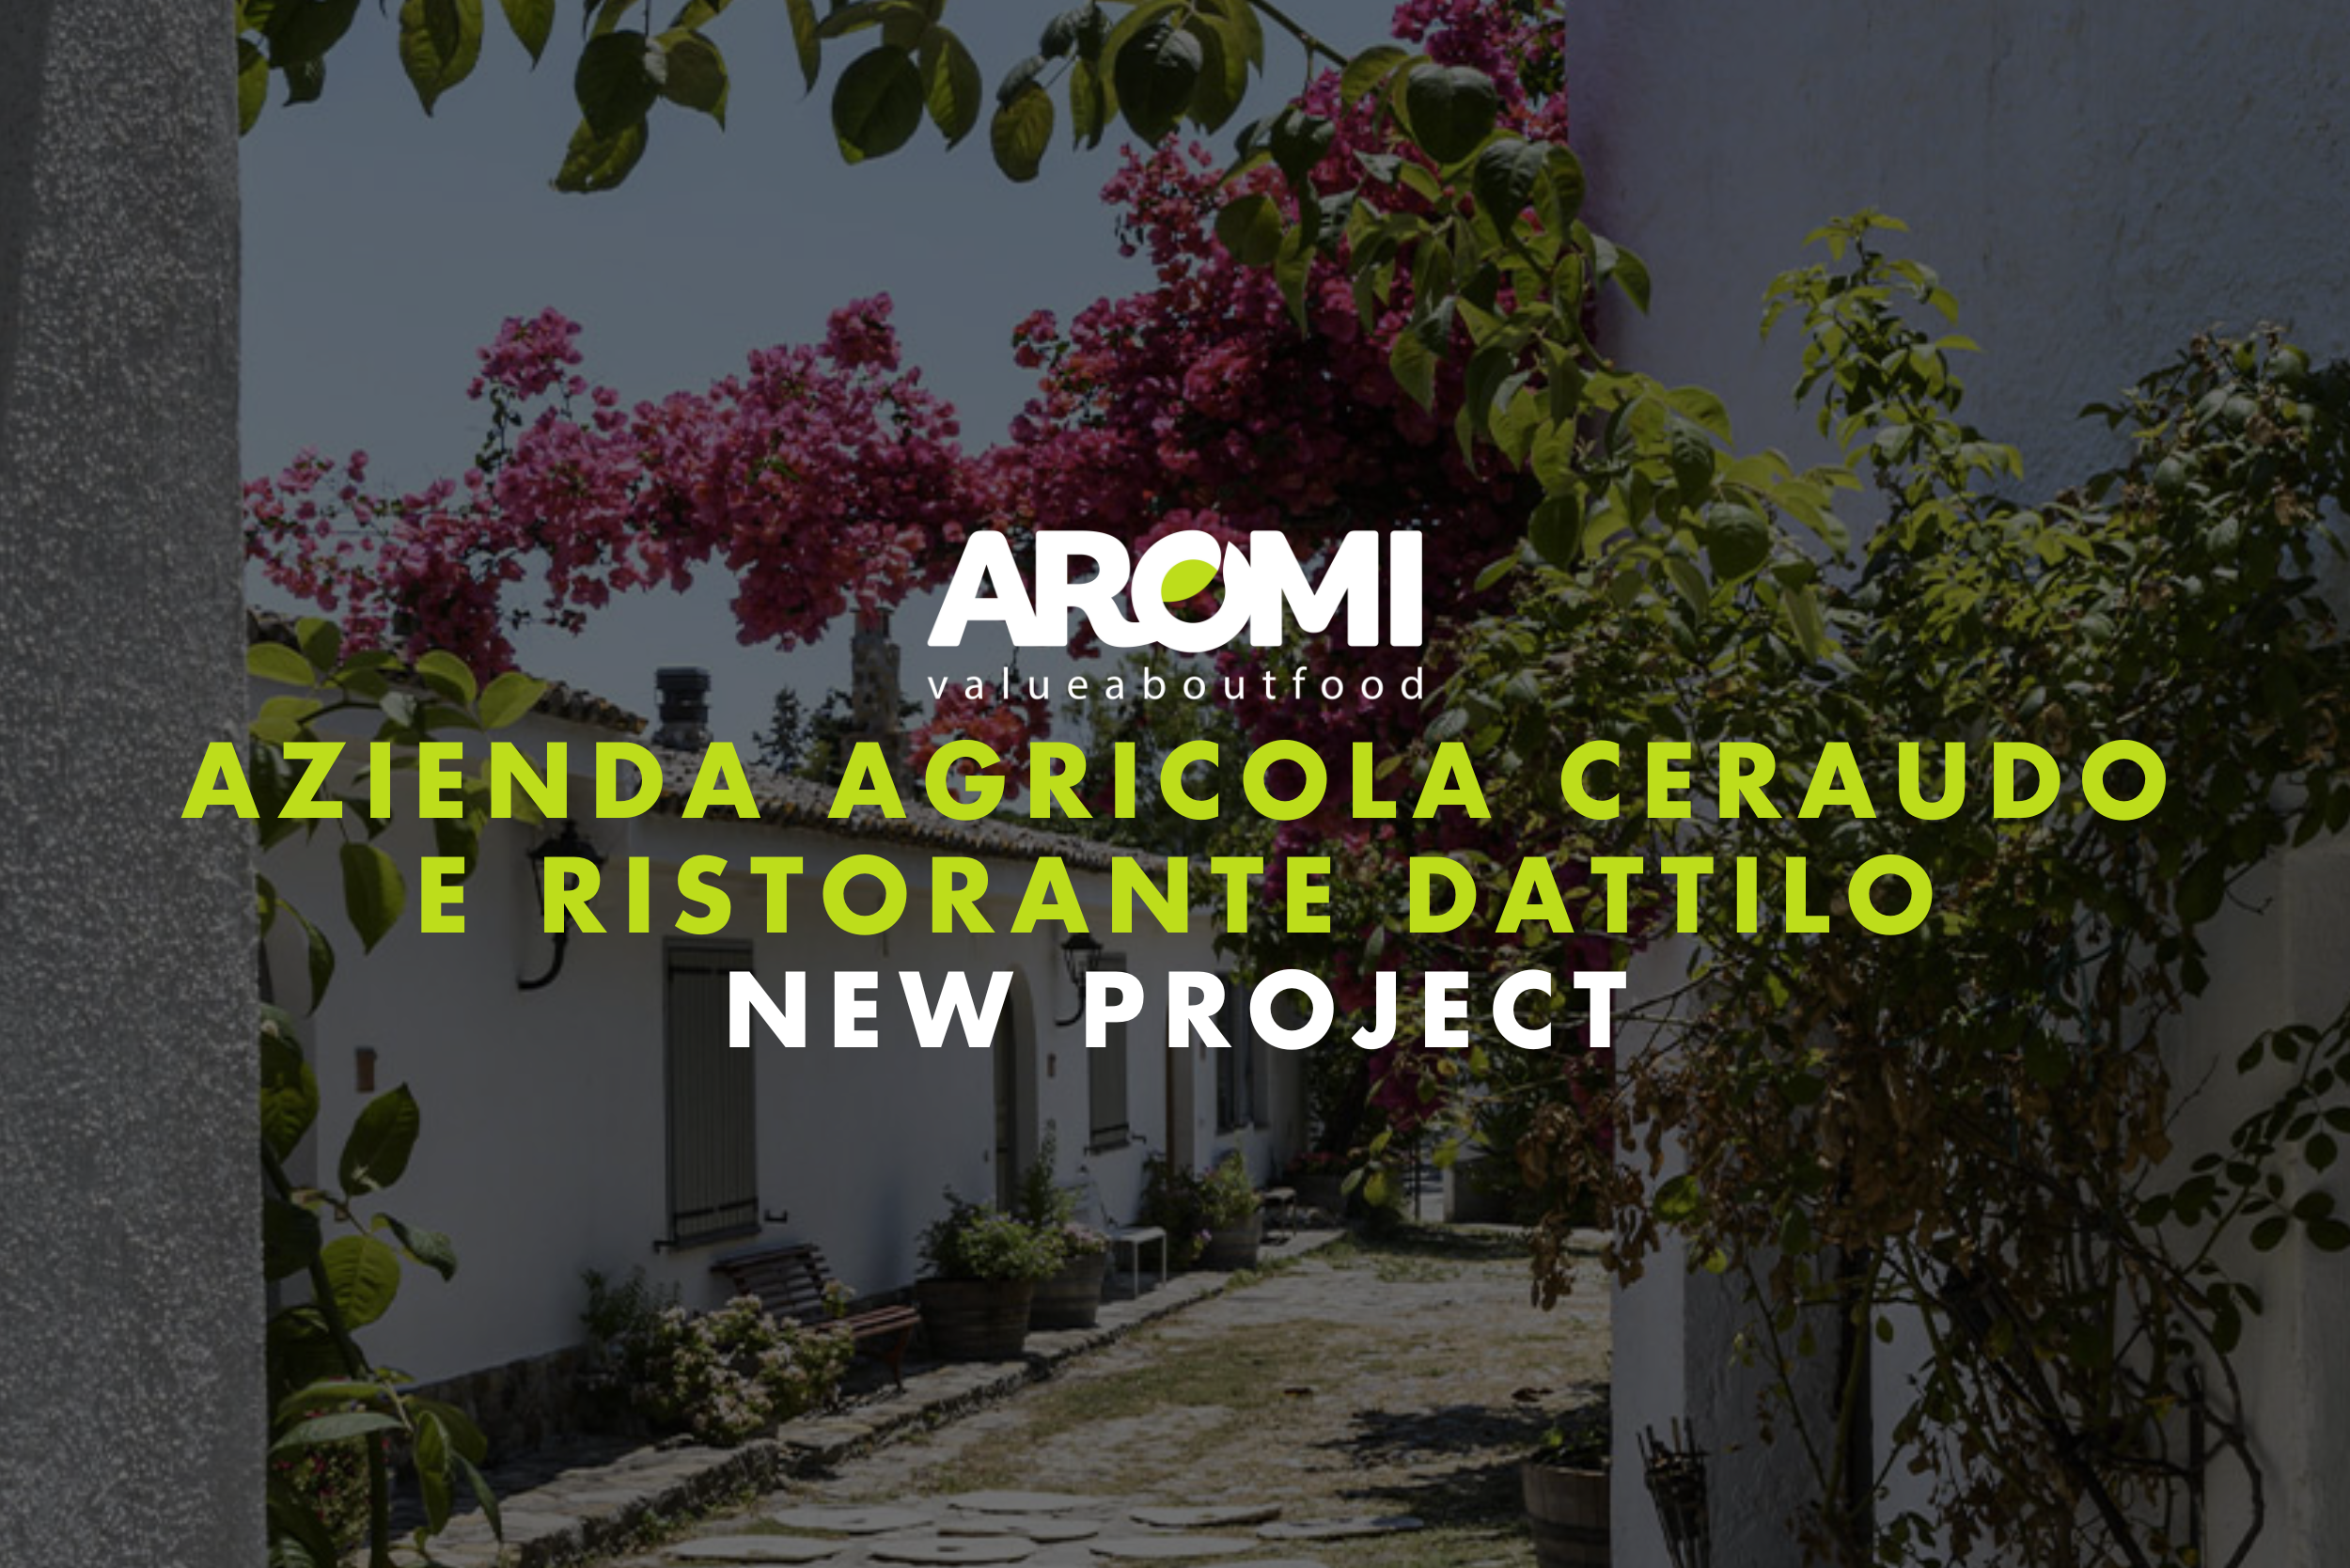 Un nuovo progetto in un incantevole borgo del 1600: <br>Azienda Agricola Ceraudo.